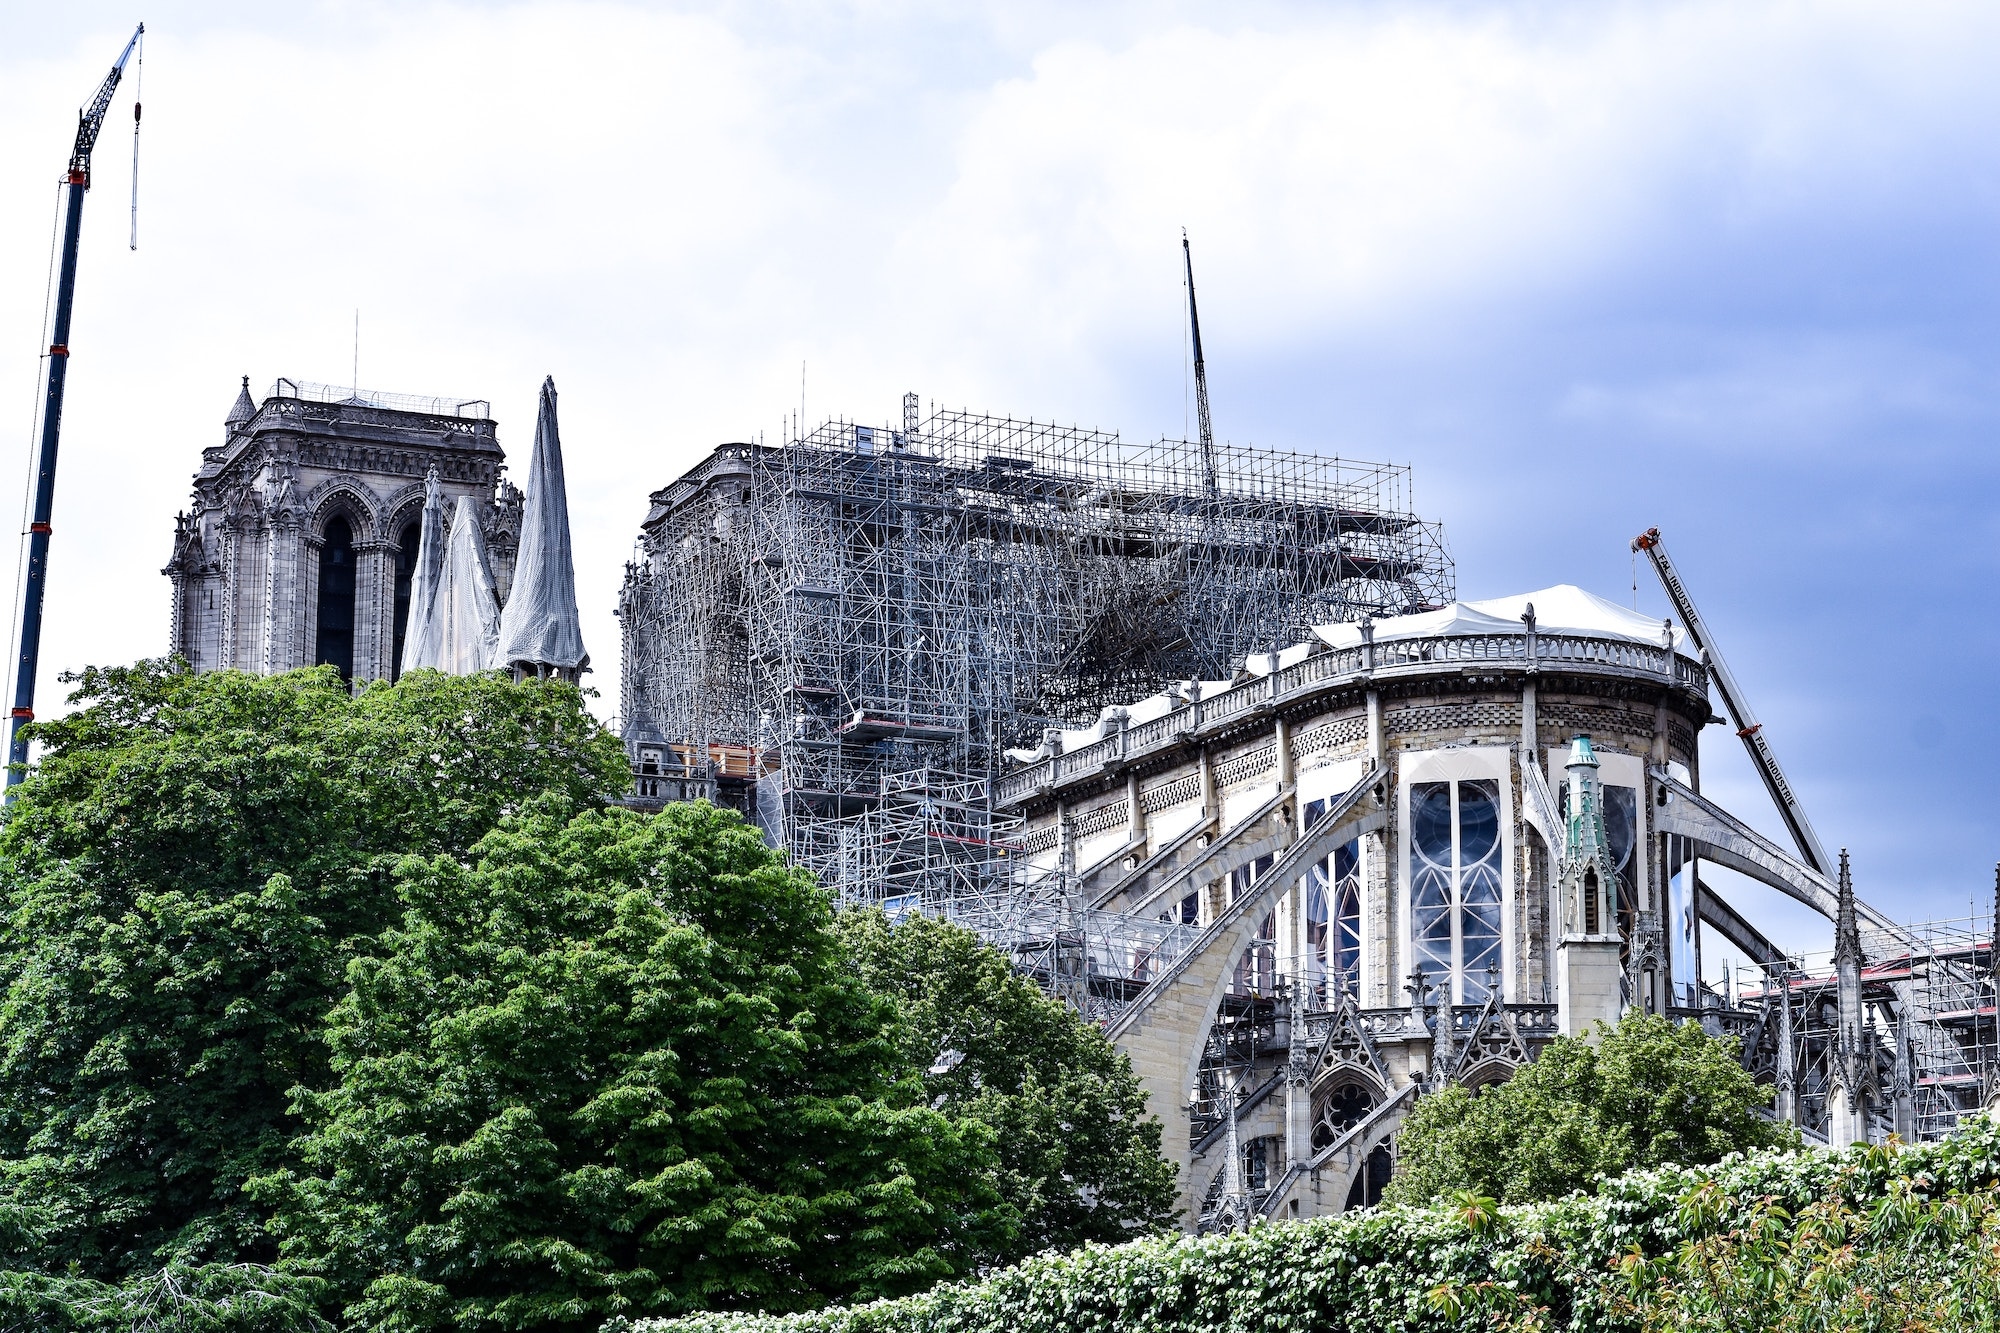 Így néz ki jelenleg a katedrális – Fotó: Tayla Bundschuh / Unsplash